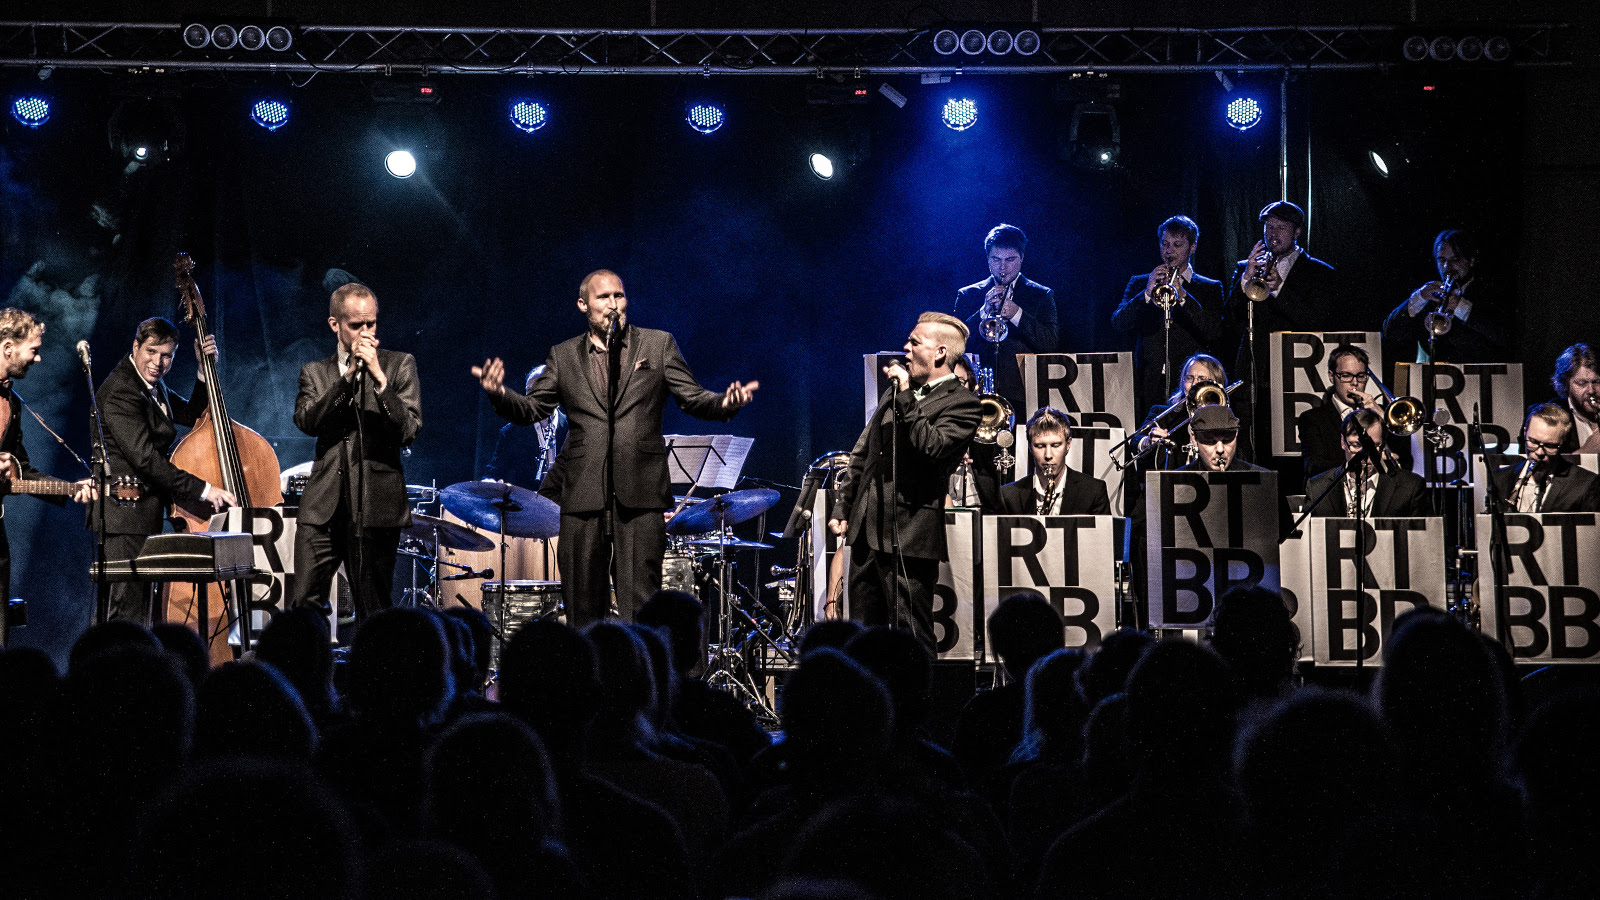 Ricky-Tick Big Band on jazz-orkesteri, jossa on 17 soittajaa ja Ricky-Tick Big Band & Julkinen Sana esiintyvät 3.7.2022 Savonlinnan Oopperajuhlilla. 